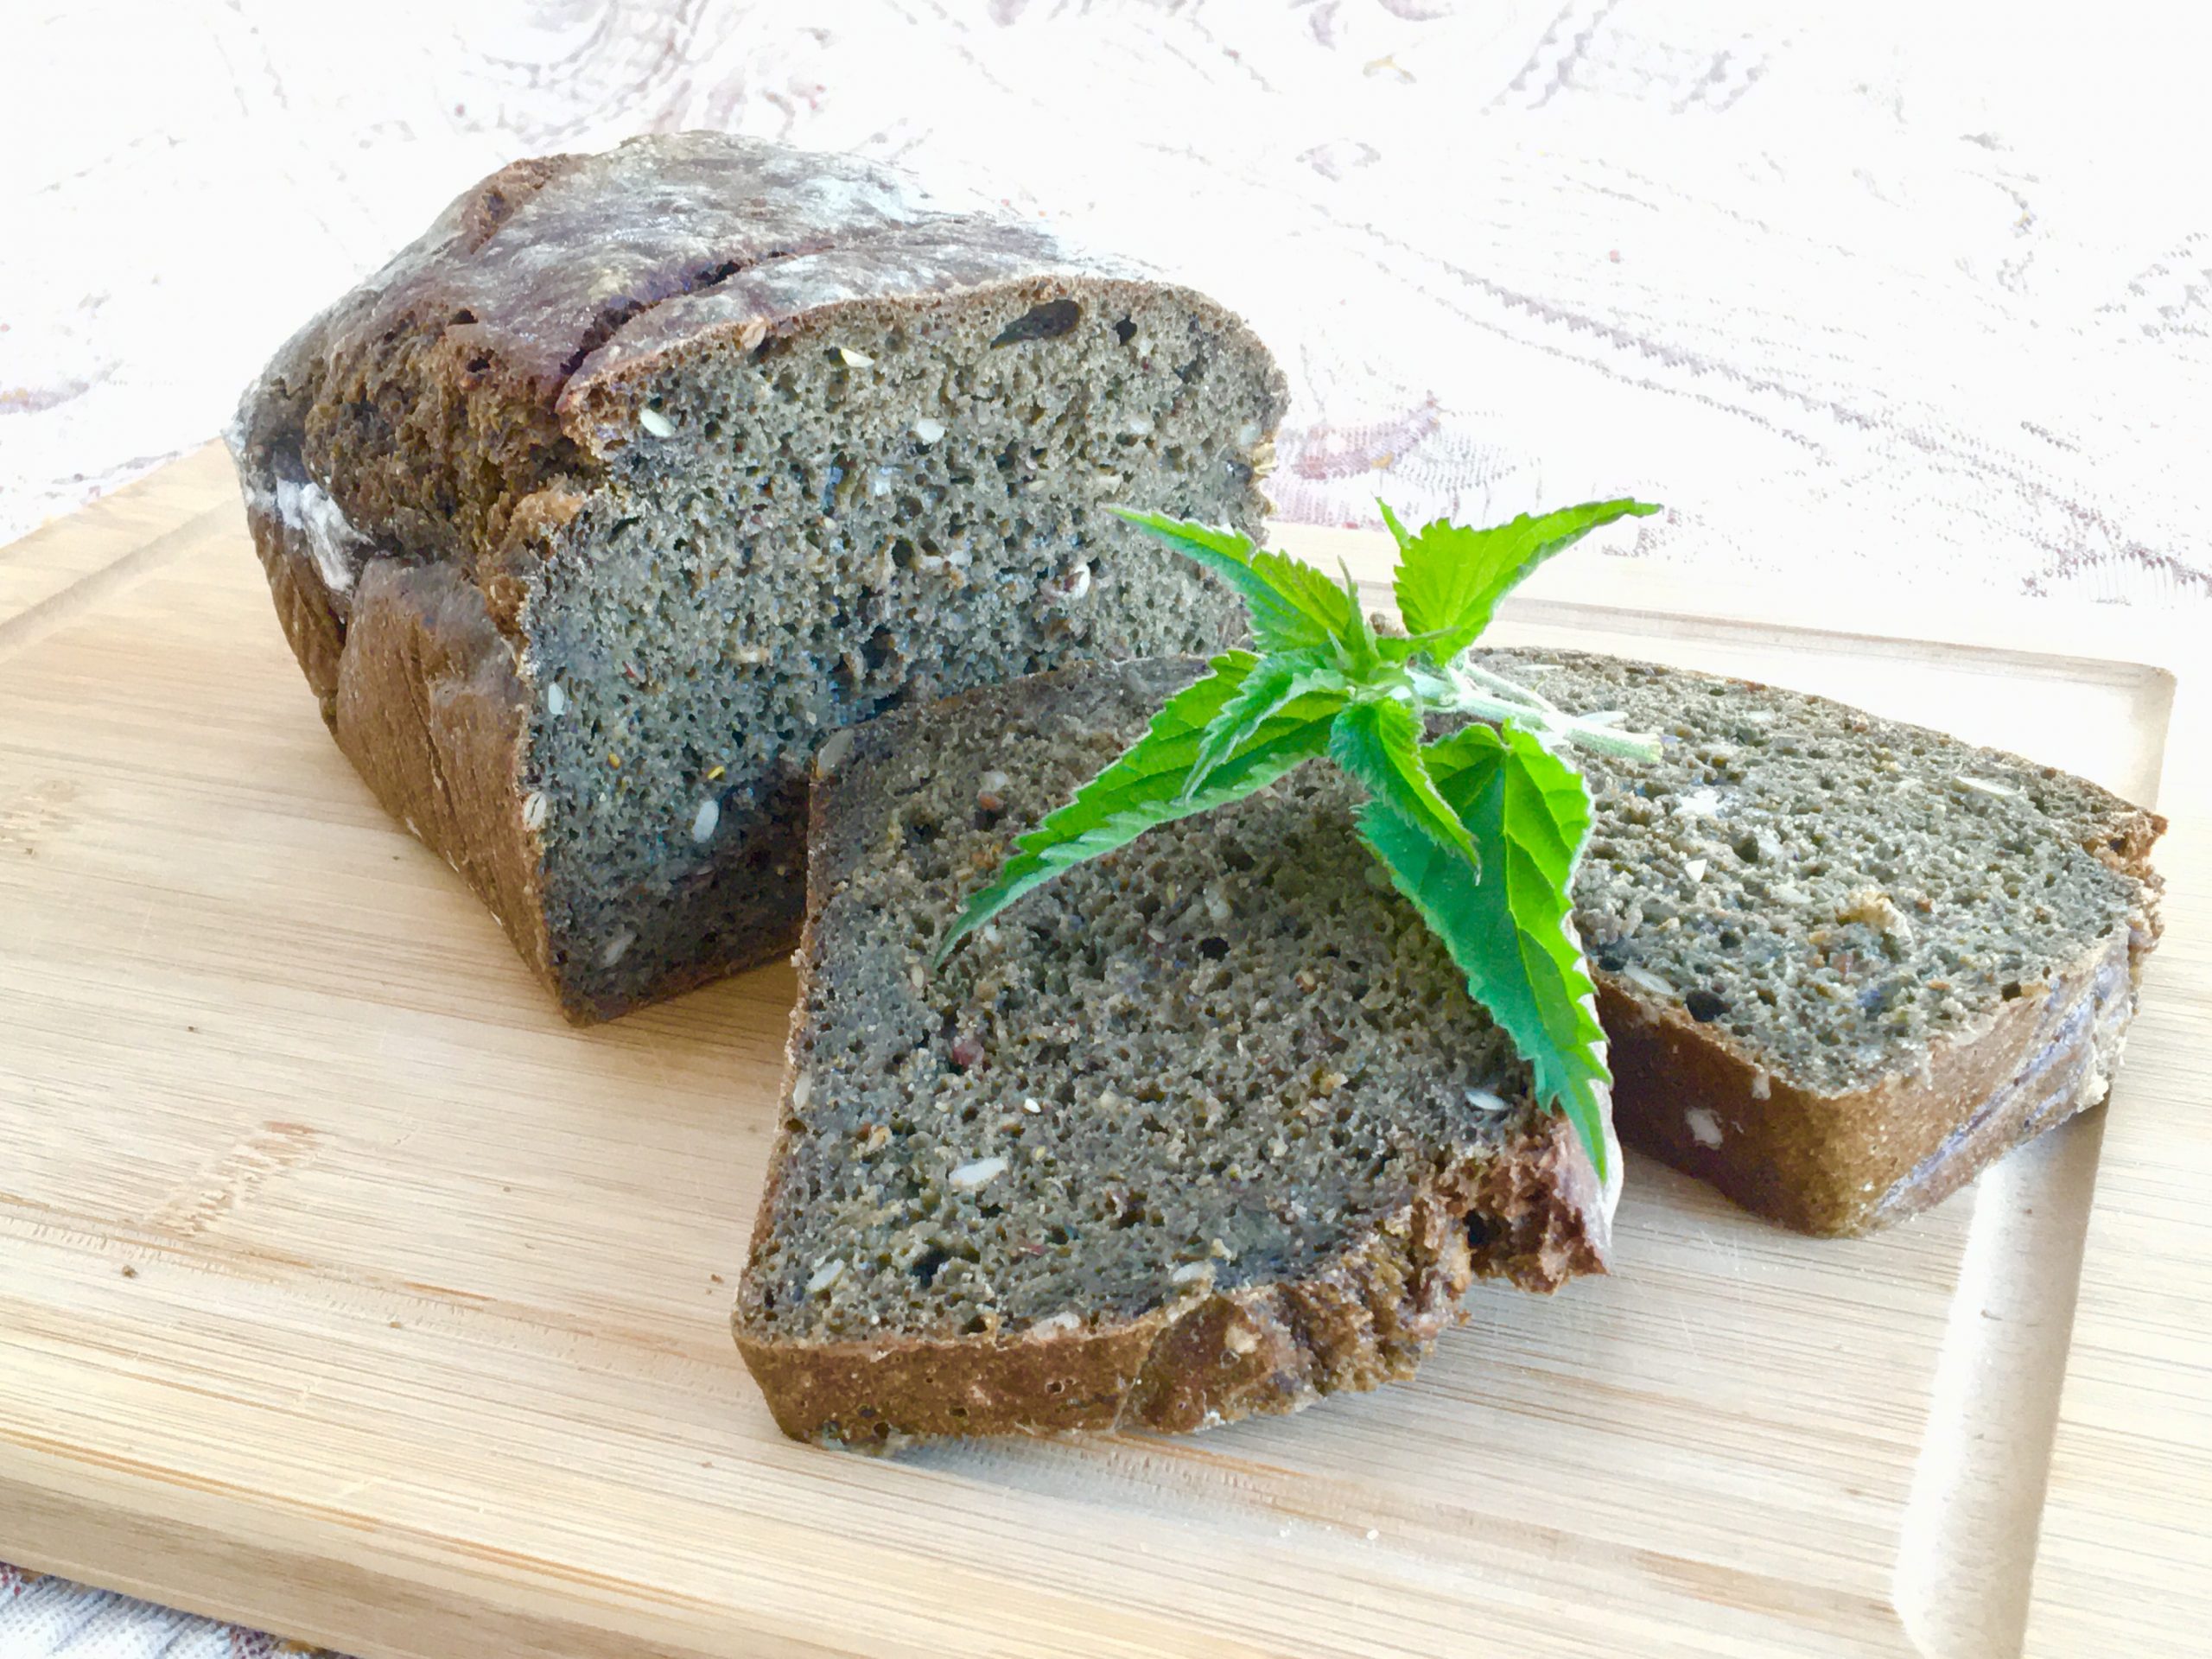 Kváskový chlieb so žihľavou očarí už len pri pohľade naň (Zdroj: Plnielanu.sk/Veronika)